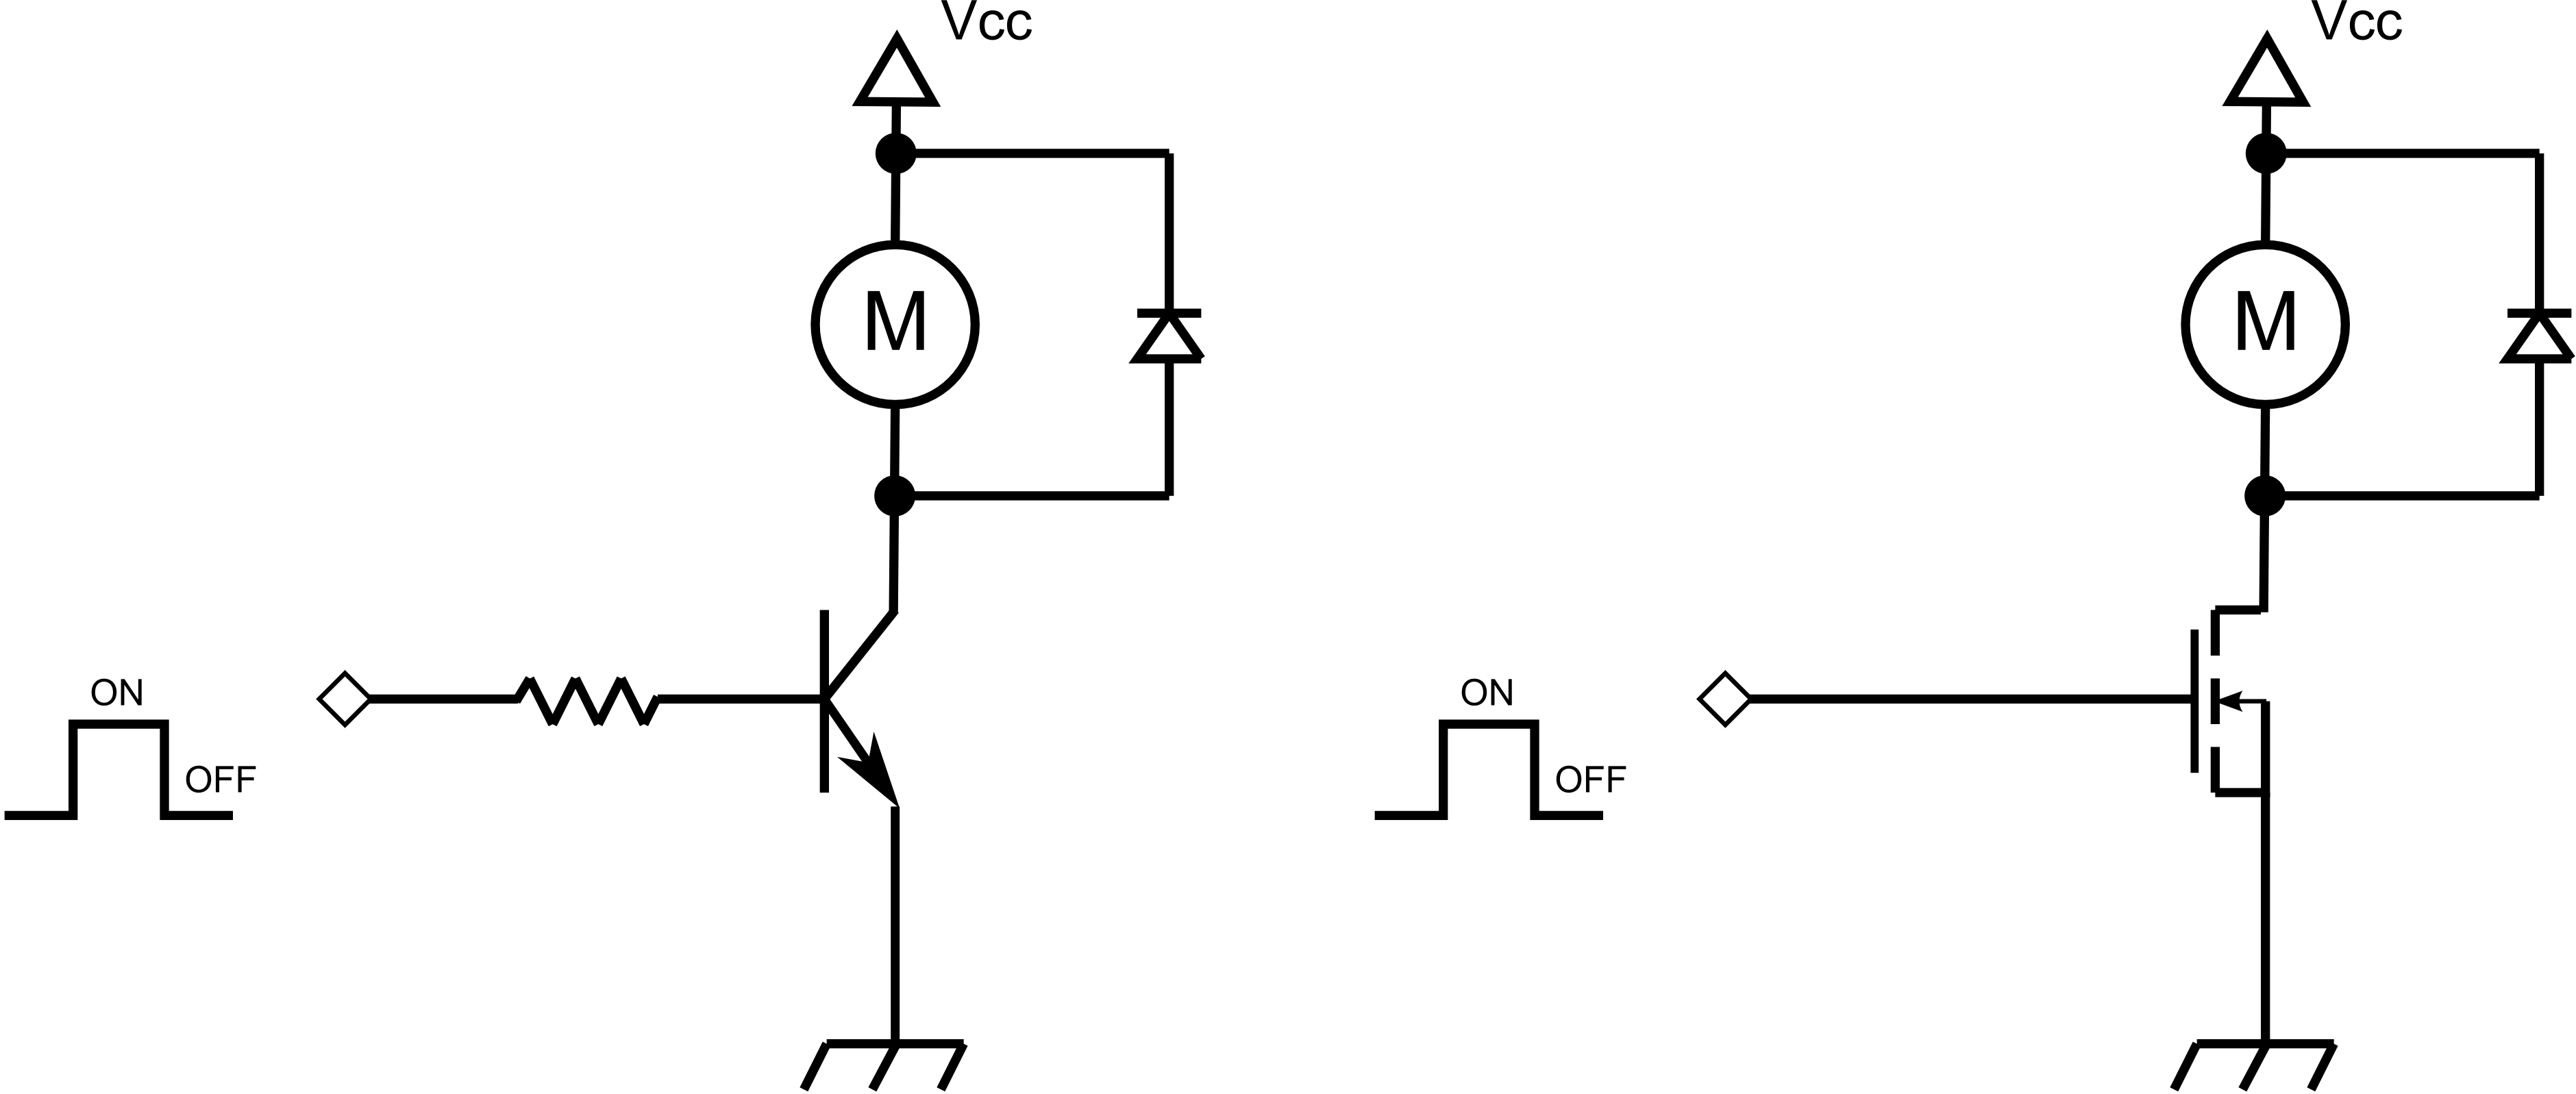 Figura 1: Schema base per il controllo di un motore DC in modalità ON-OFF